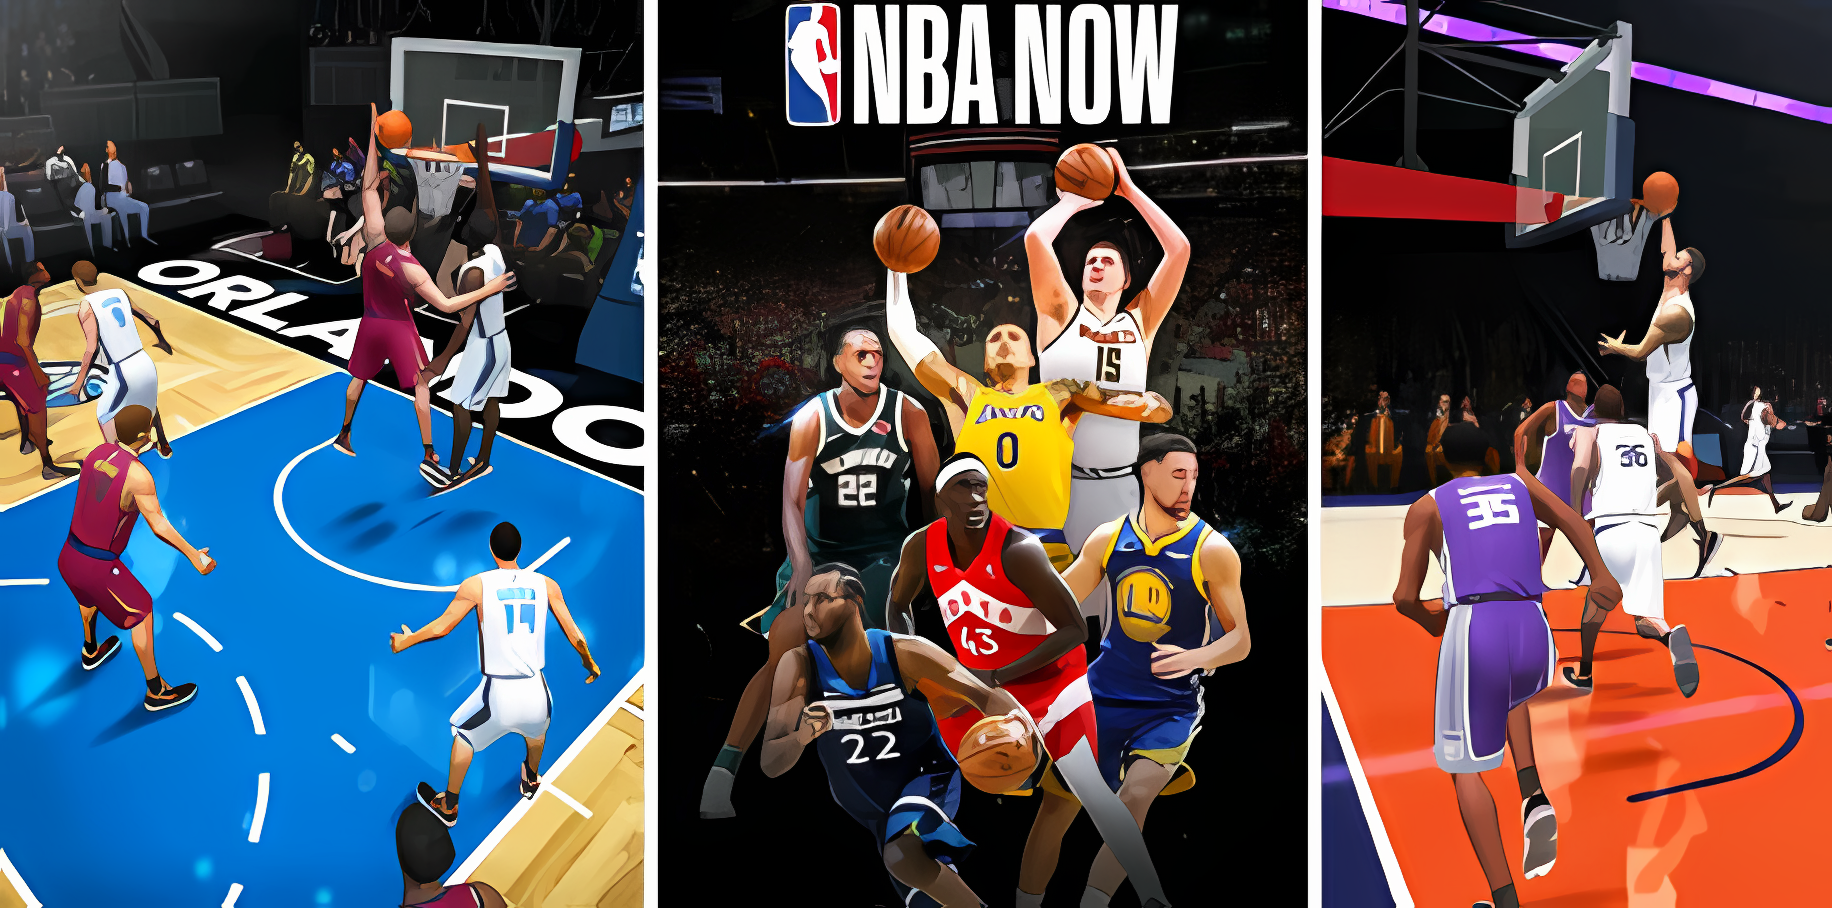 NBA NOW Mobile Basketball Game геймплей игры для Андроид 🅰🅽🅳🆁🅾🅸#NBA NOW Mobile Basketball Game